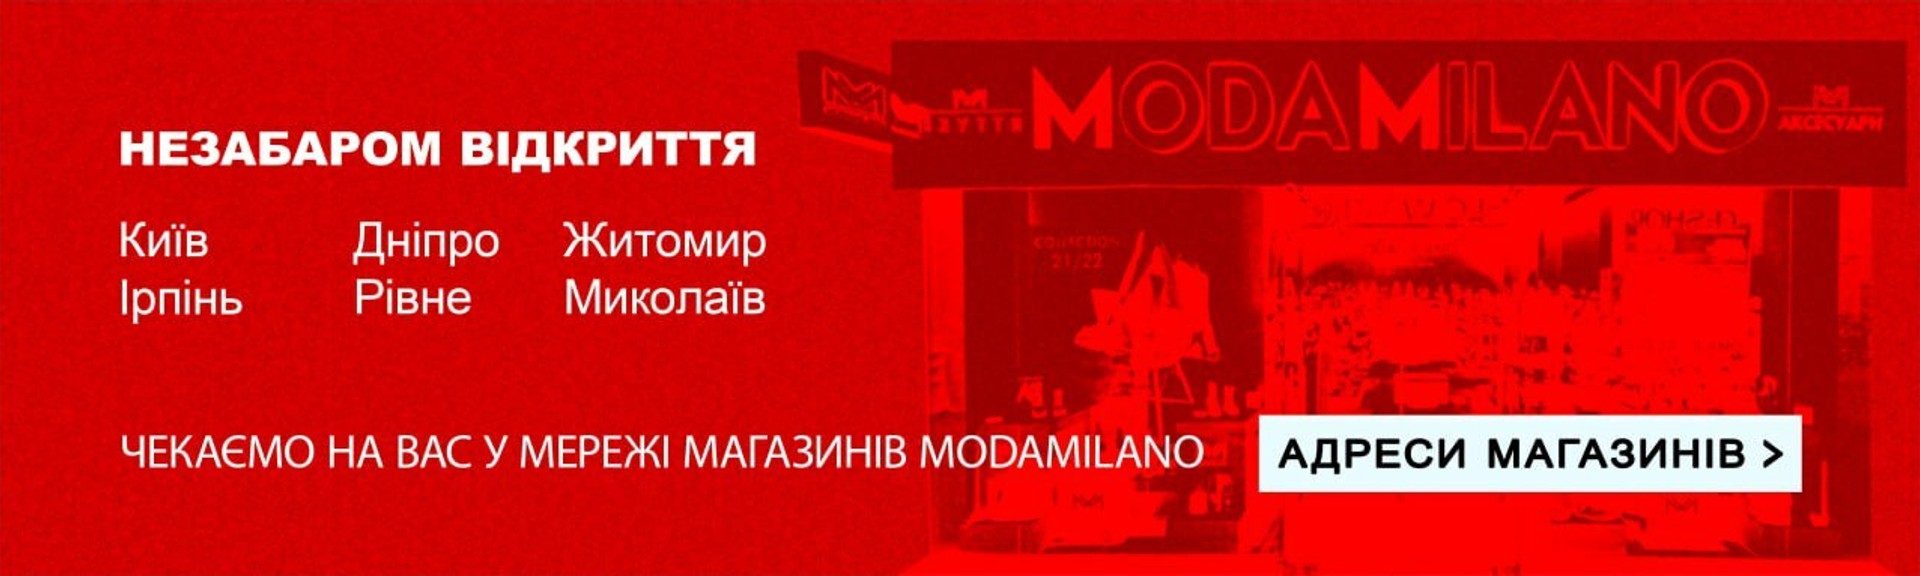 Открытие сети магазинов ModaMilano